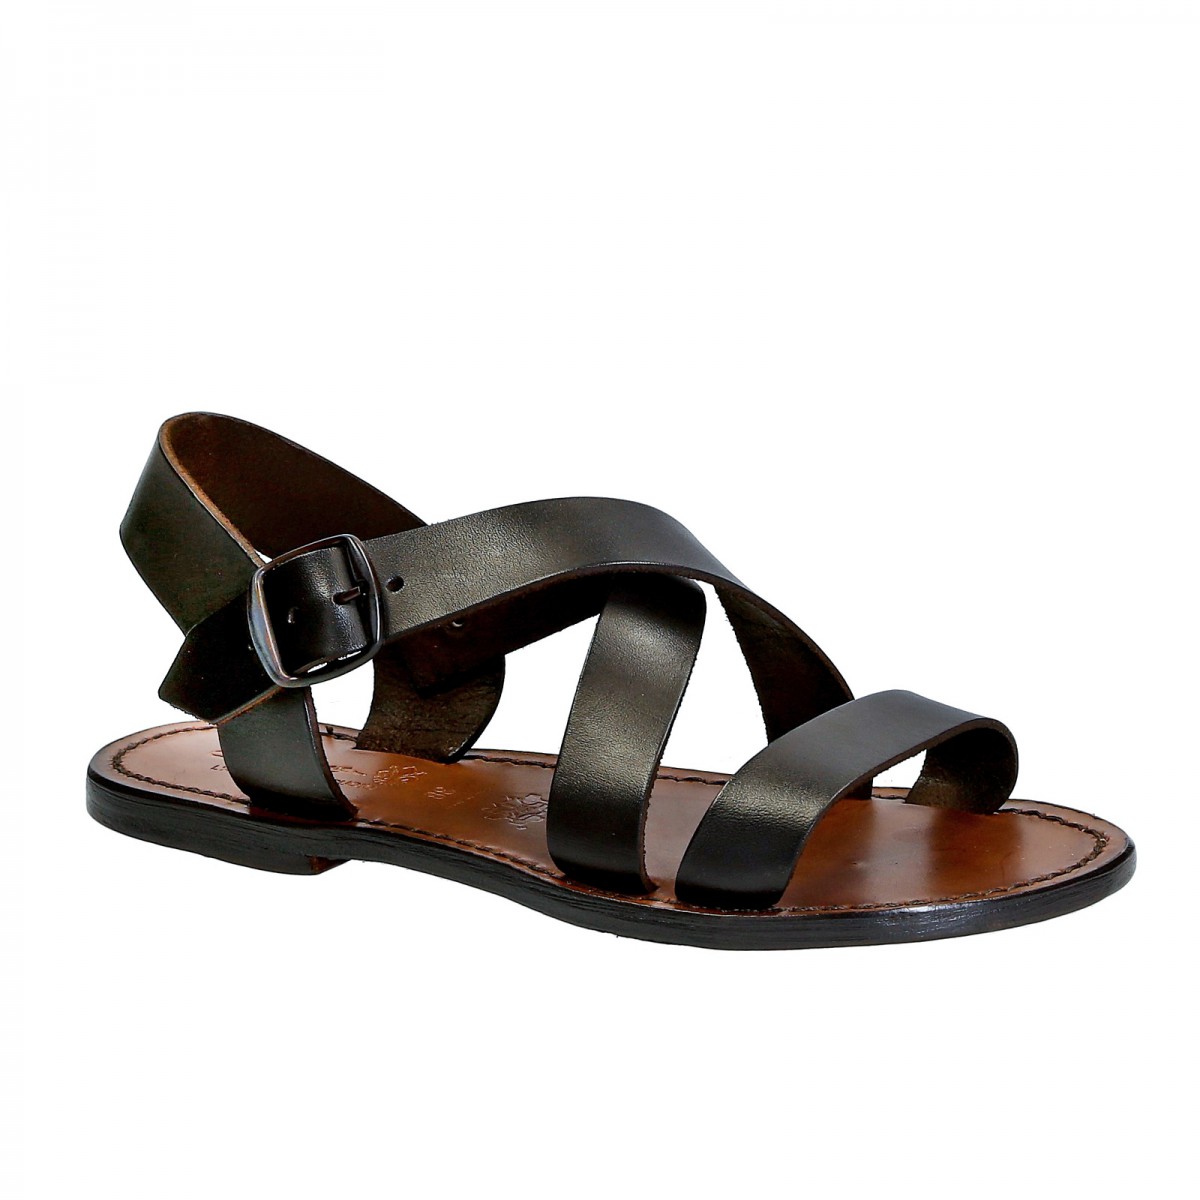 【たちのノウ】 Made In Italy Women's Sandals Shoes Heeled Summer ...